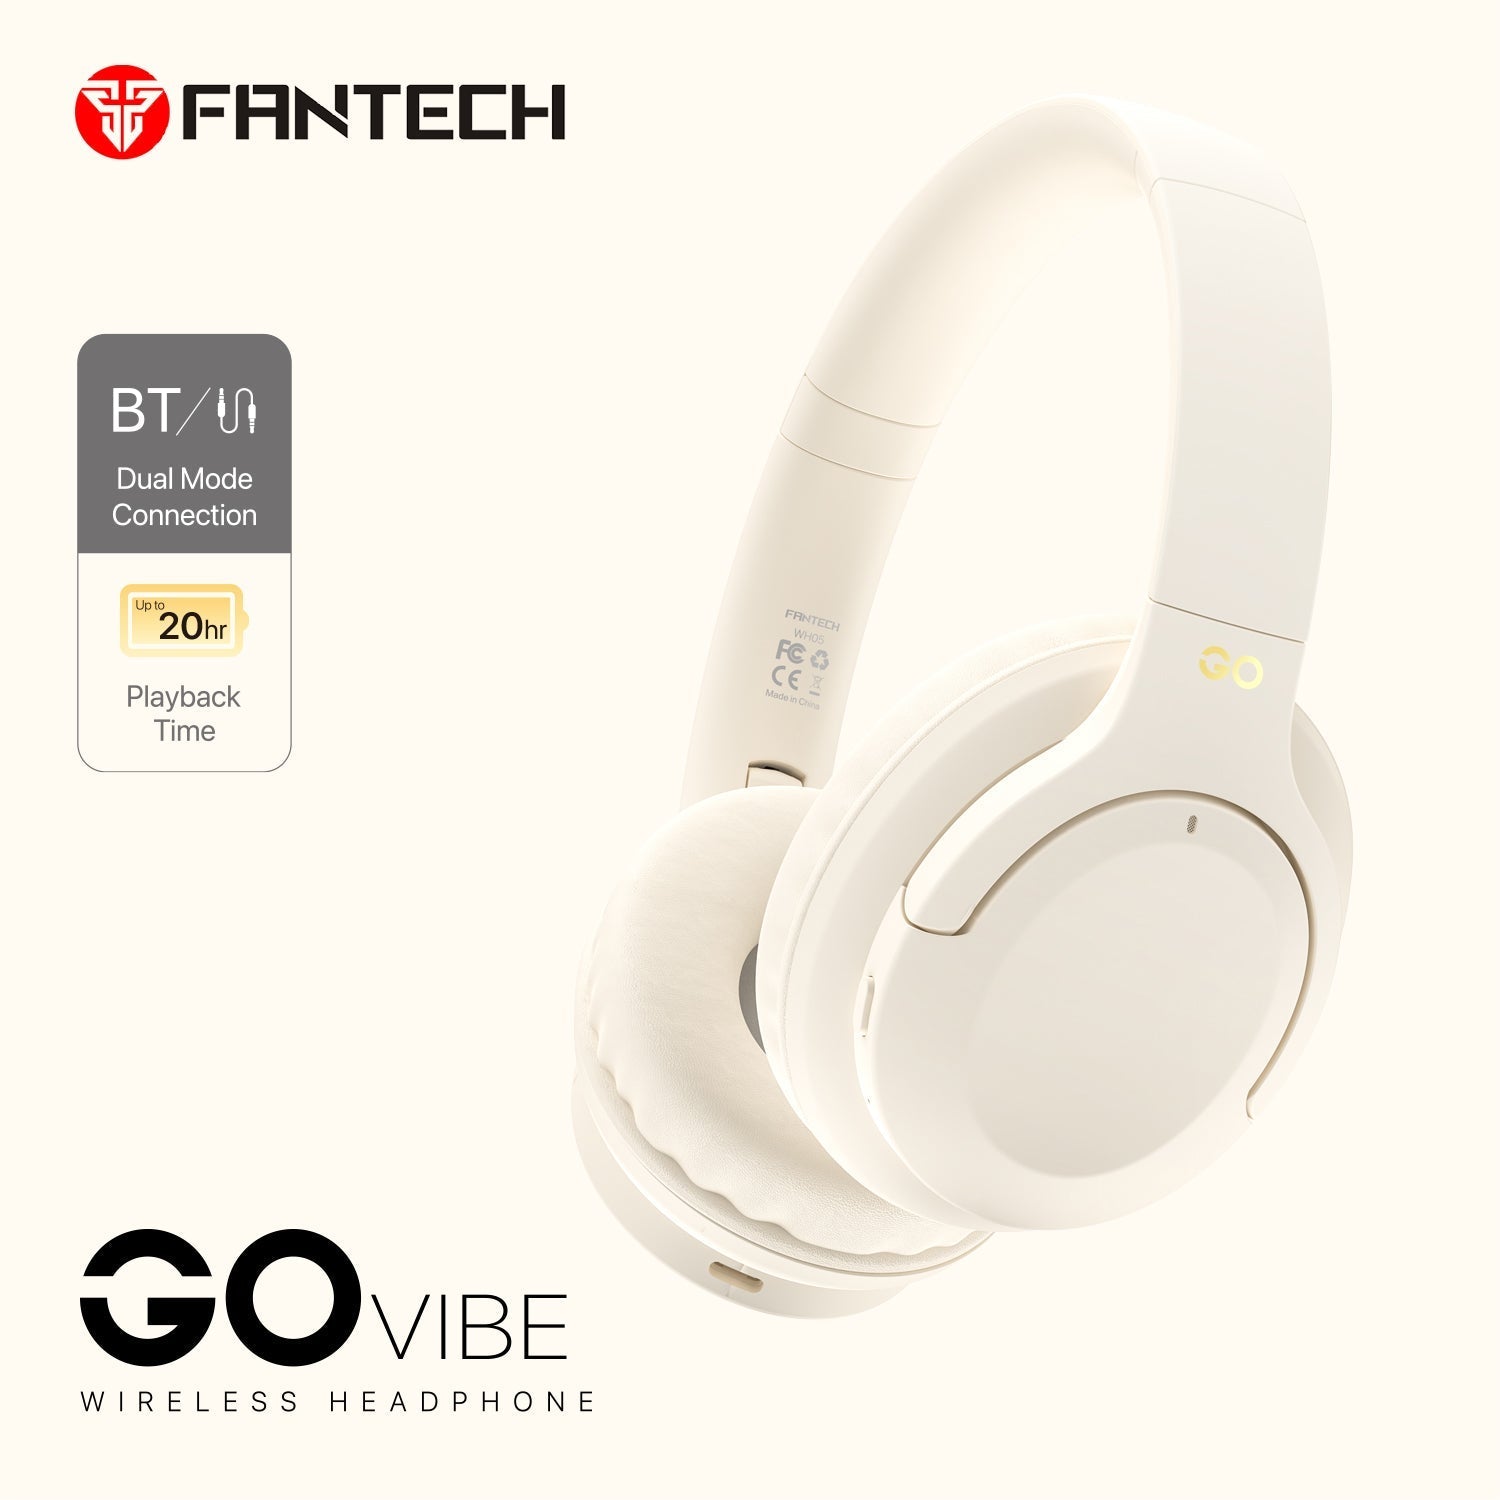 Fantech Go Vibe WH05 Wireless Headphone JOD 20